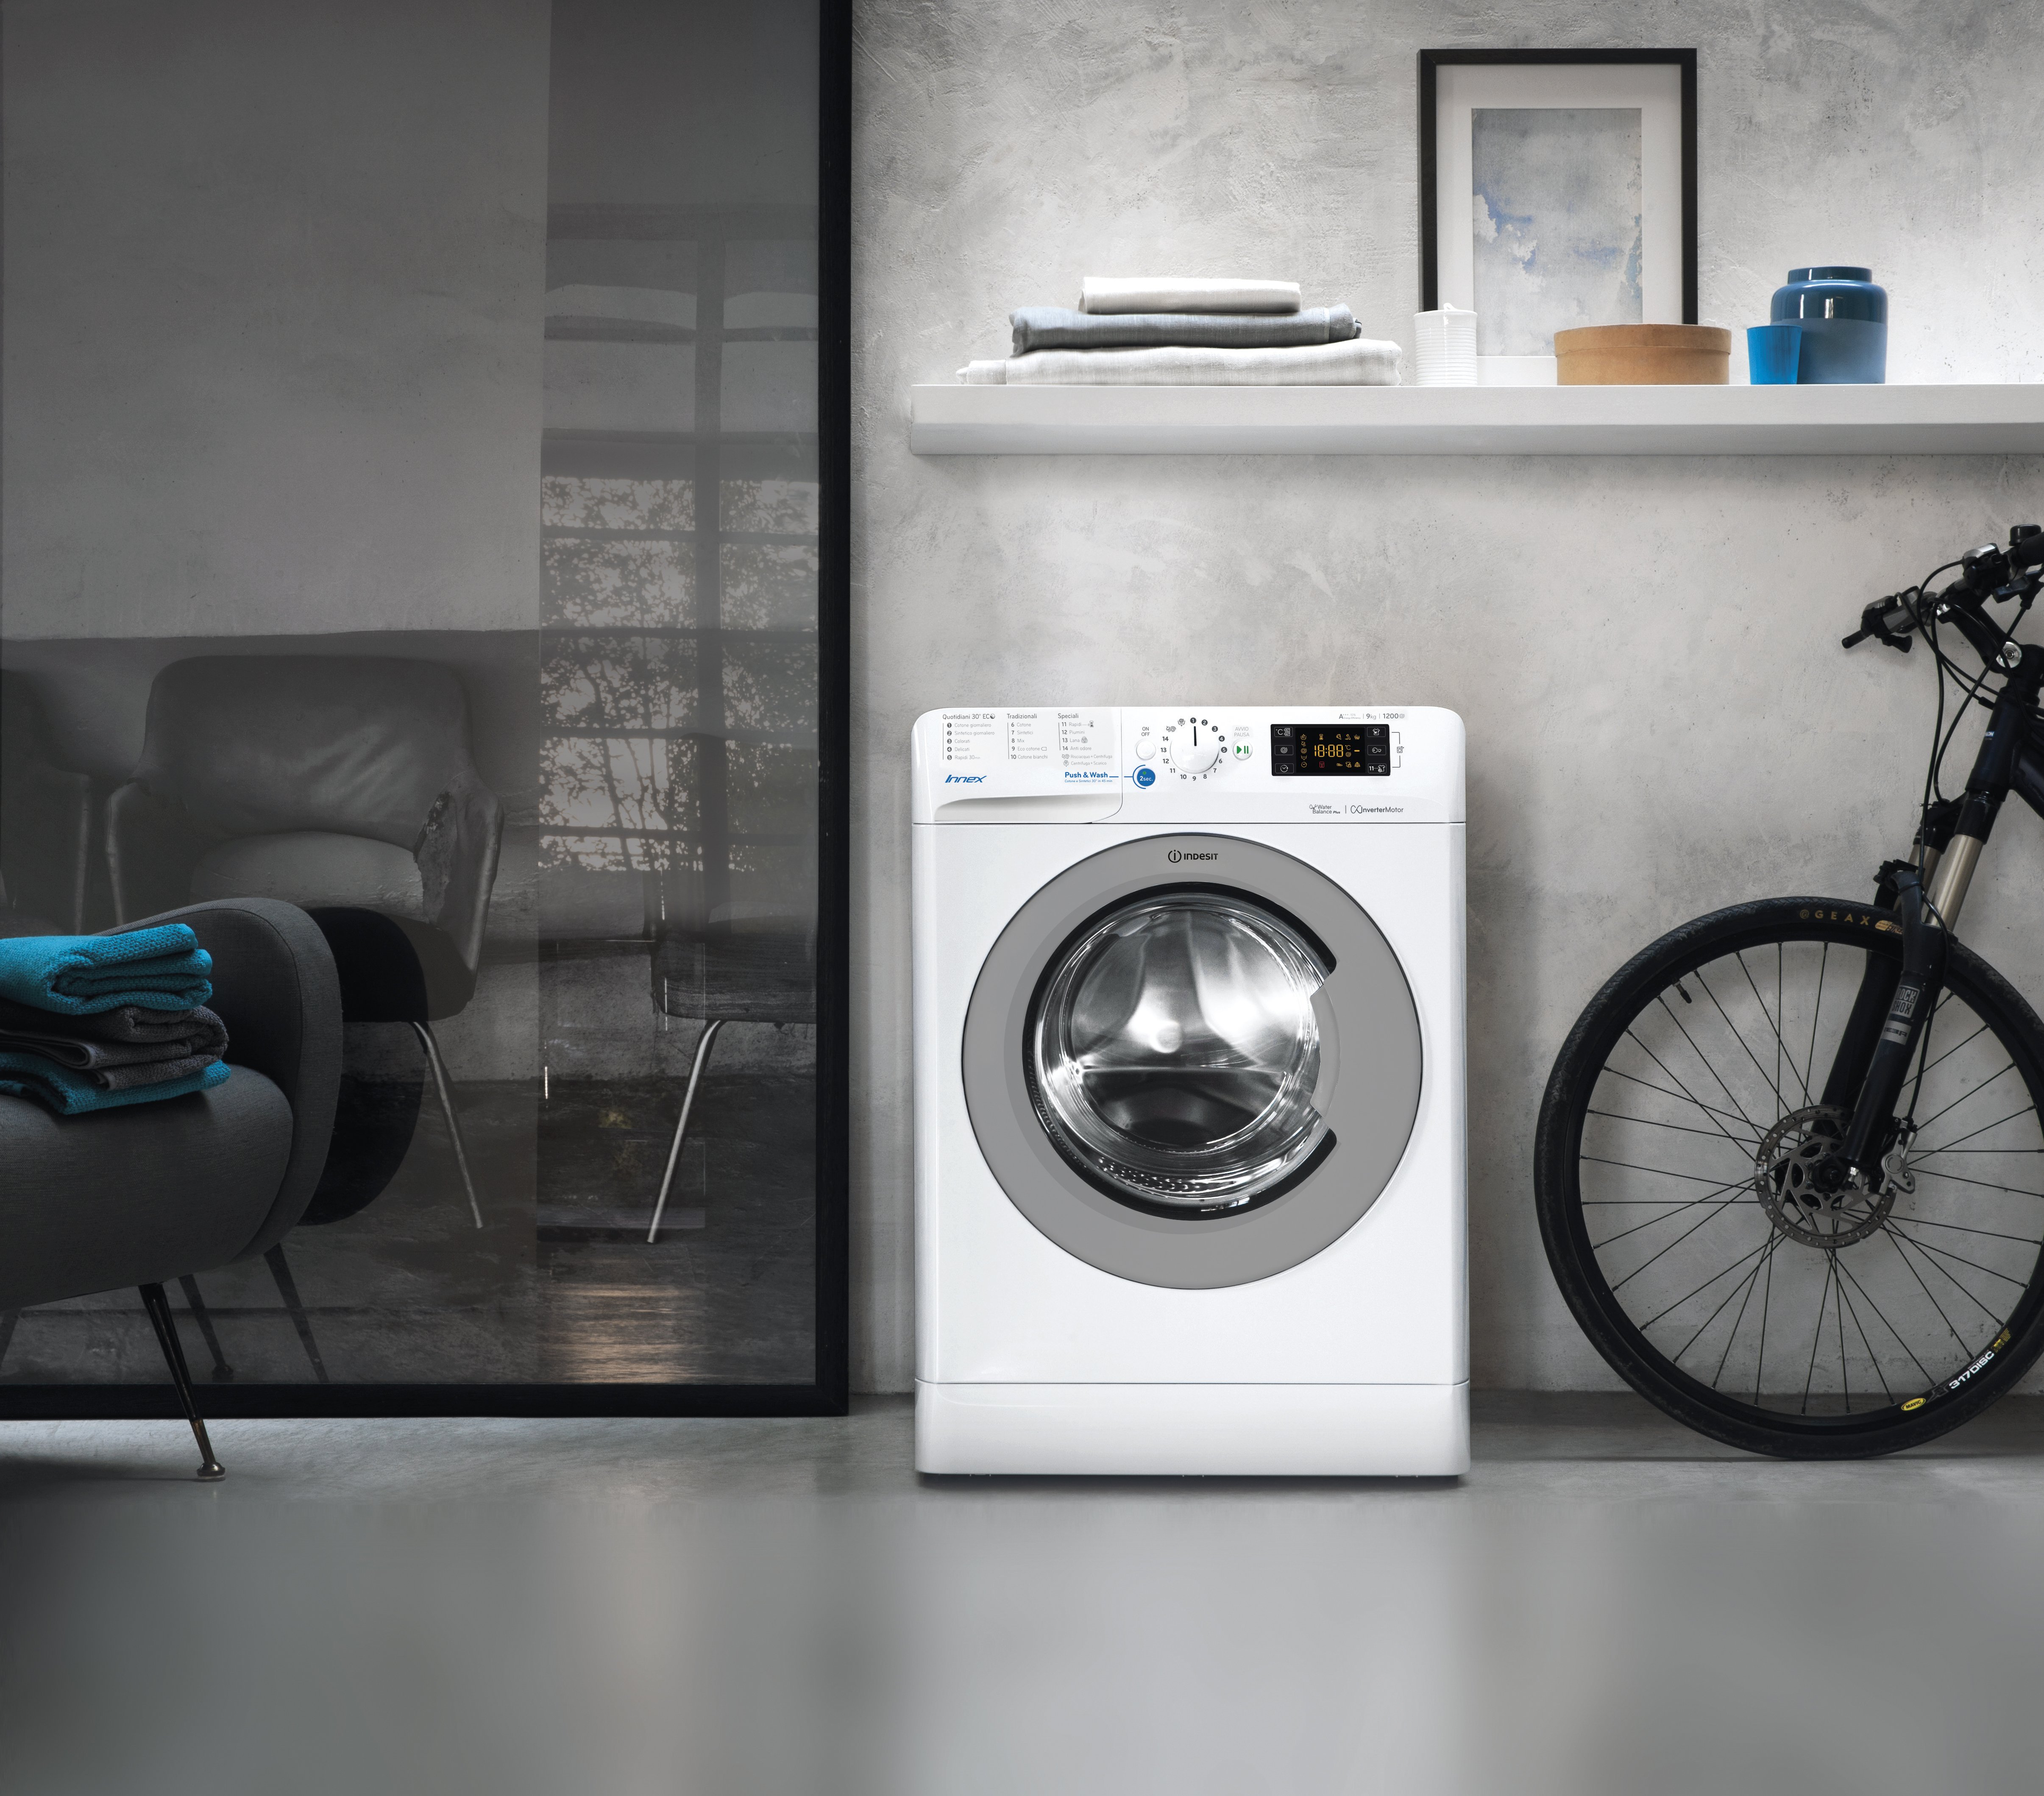 Спортивная стиральная машина. Стиральные машины Samsung 2023. Indesit Innex стиральная машина с сушкой. Стиральная машина Канди 2020. 80 Wash стиральная машина.